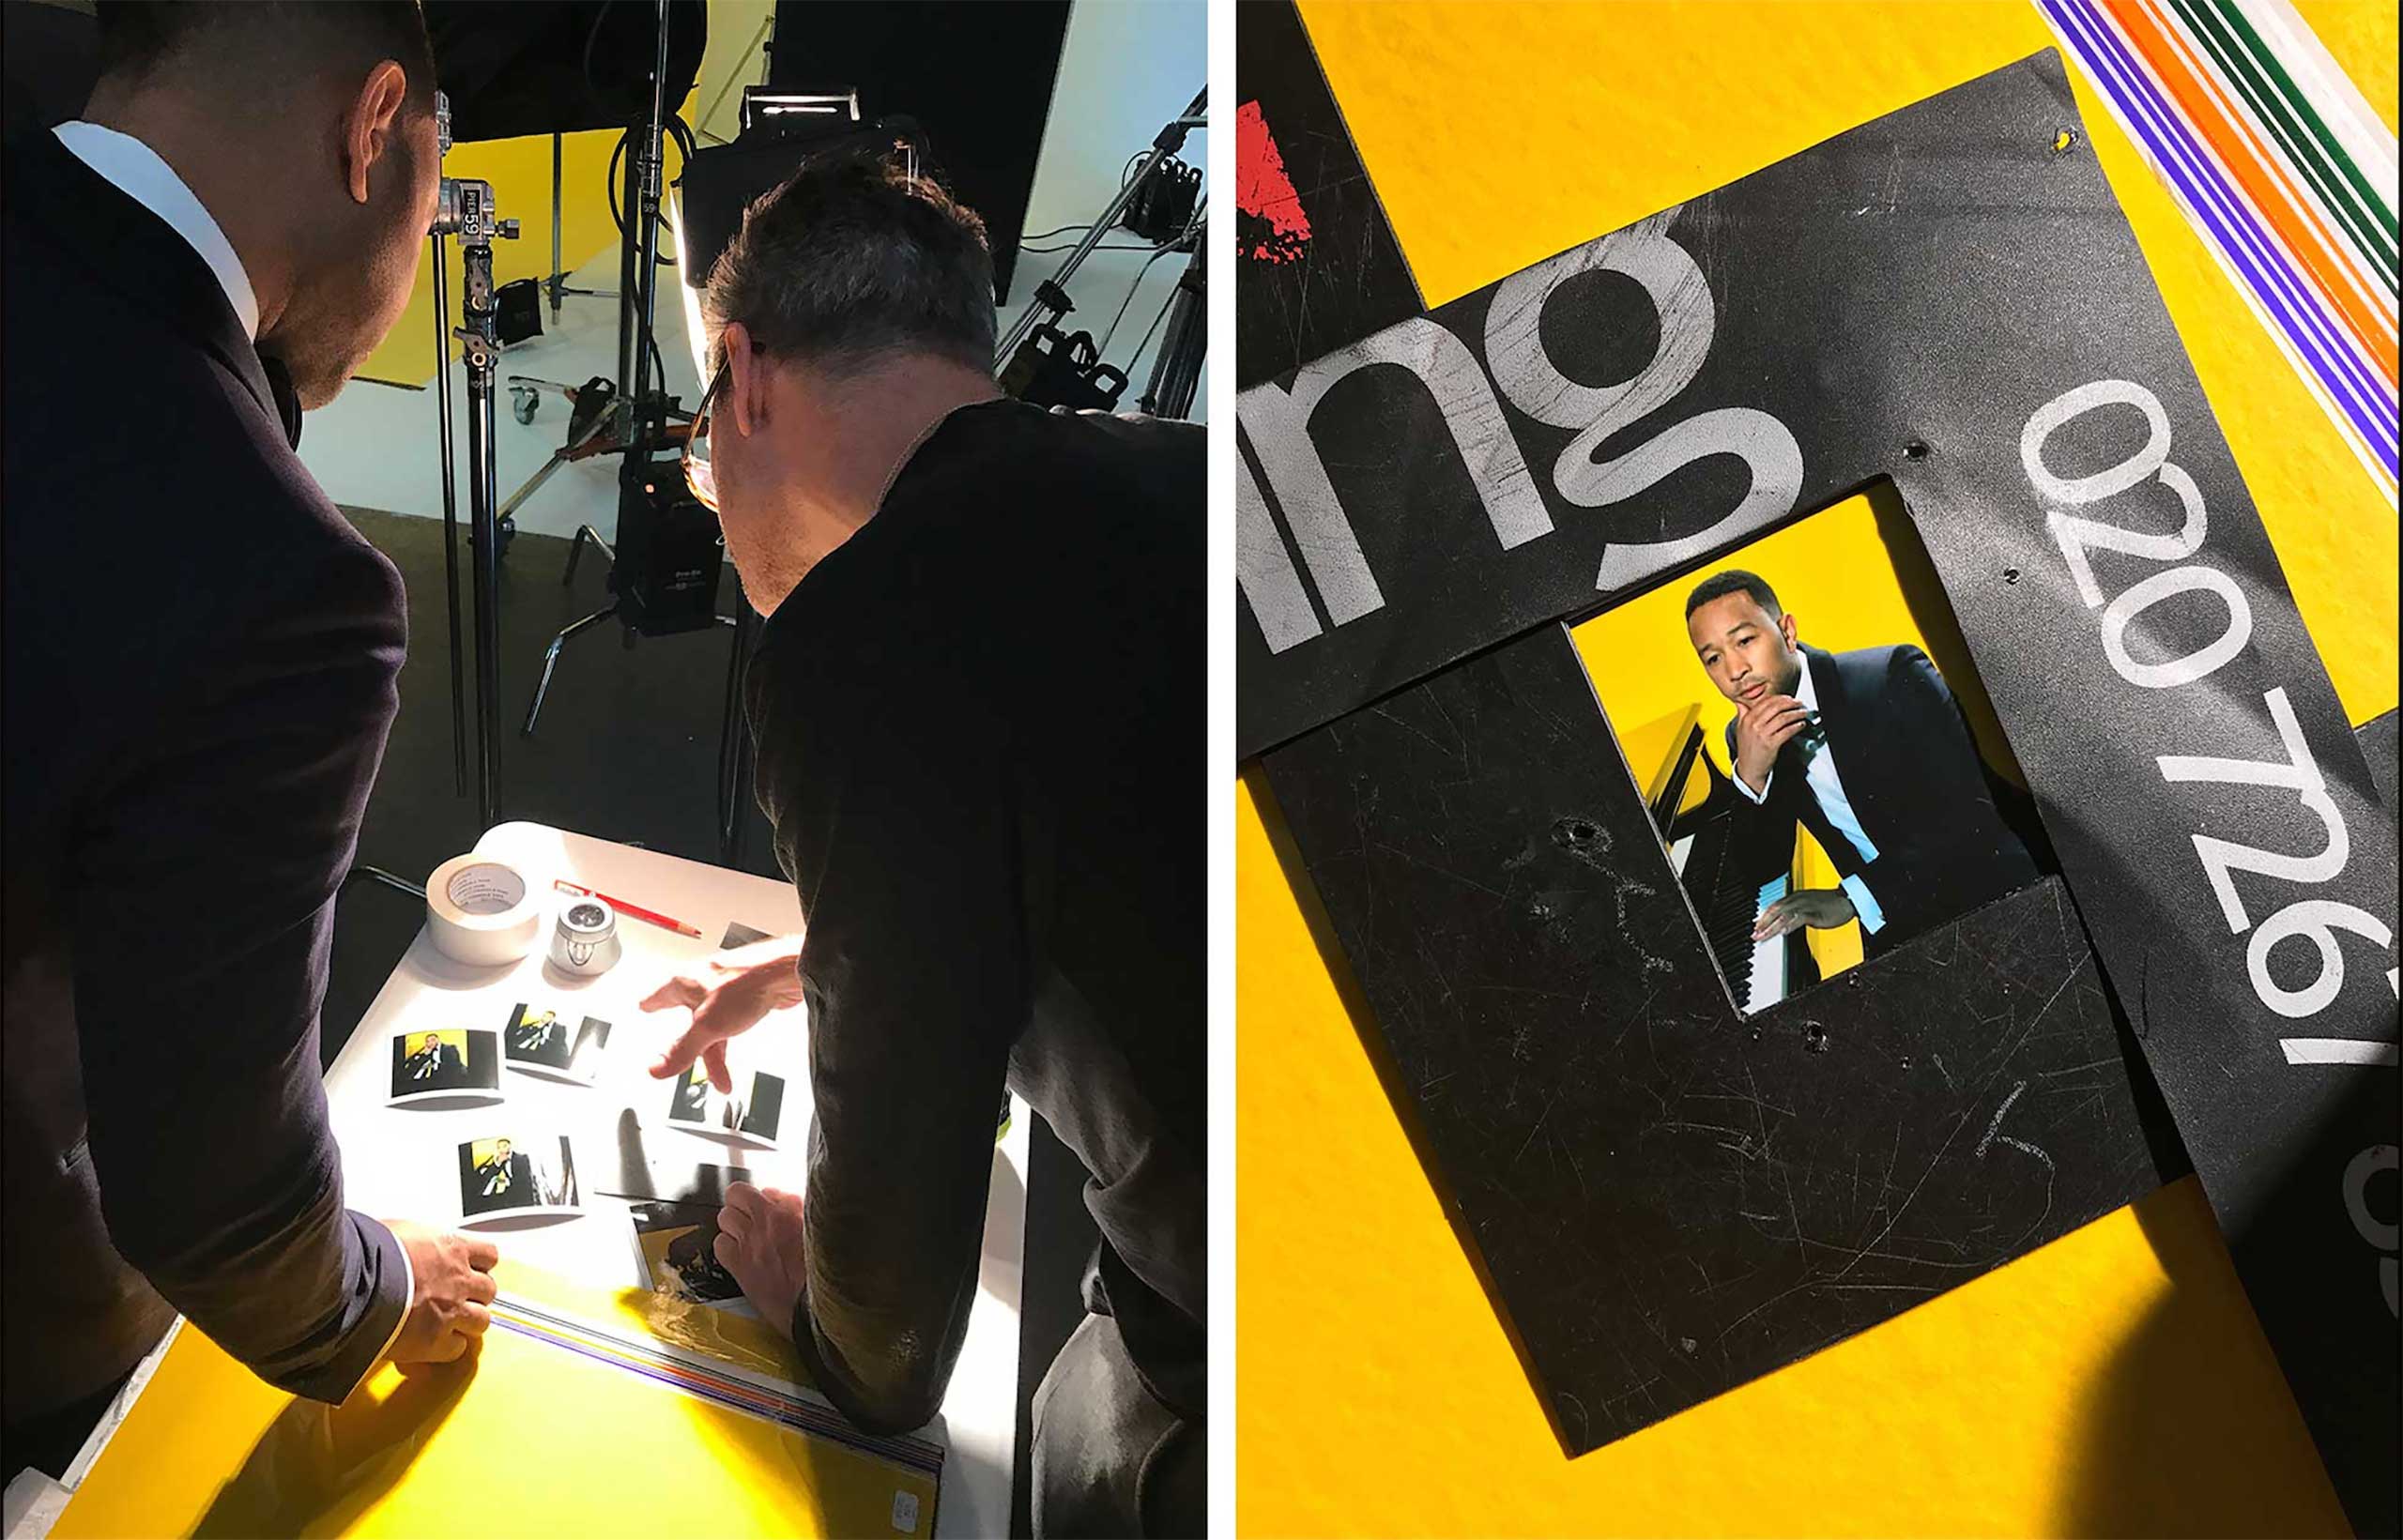 (L) John Legend and Miles Aldridge study the Polaroids on shoot. (Kira Pollack)